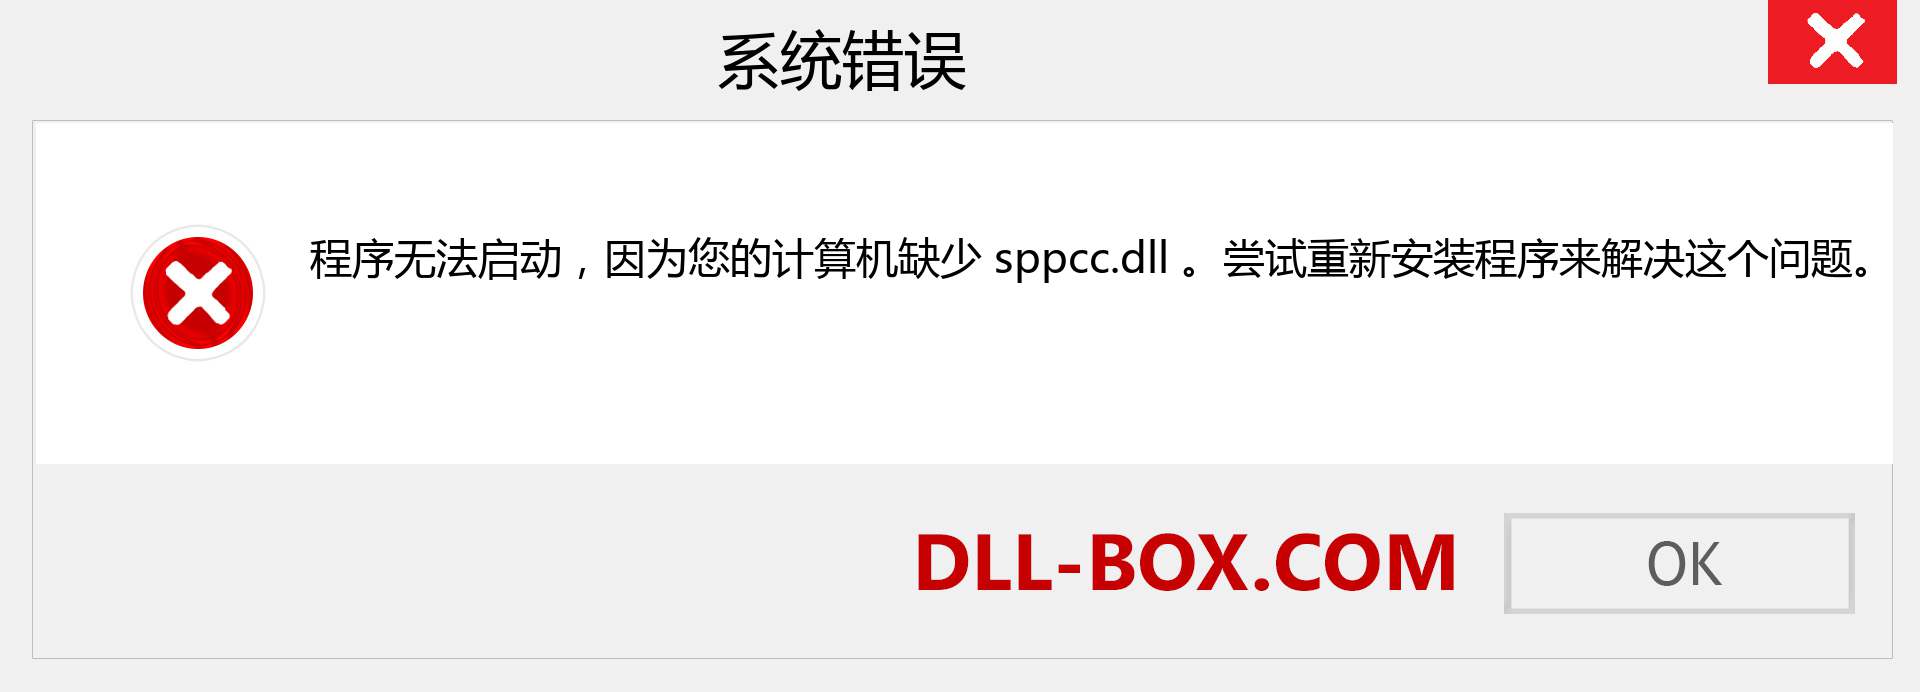 sppcc.dll 文件丢失？。 适用于 Windows 7、8、10 的下载 - 修复 Windows、照片、图像上的 sppcc dll 丢失错误